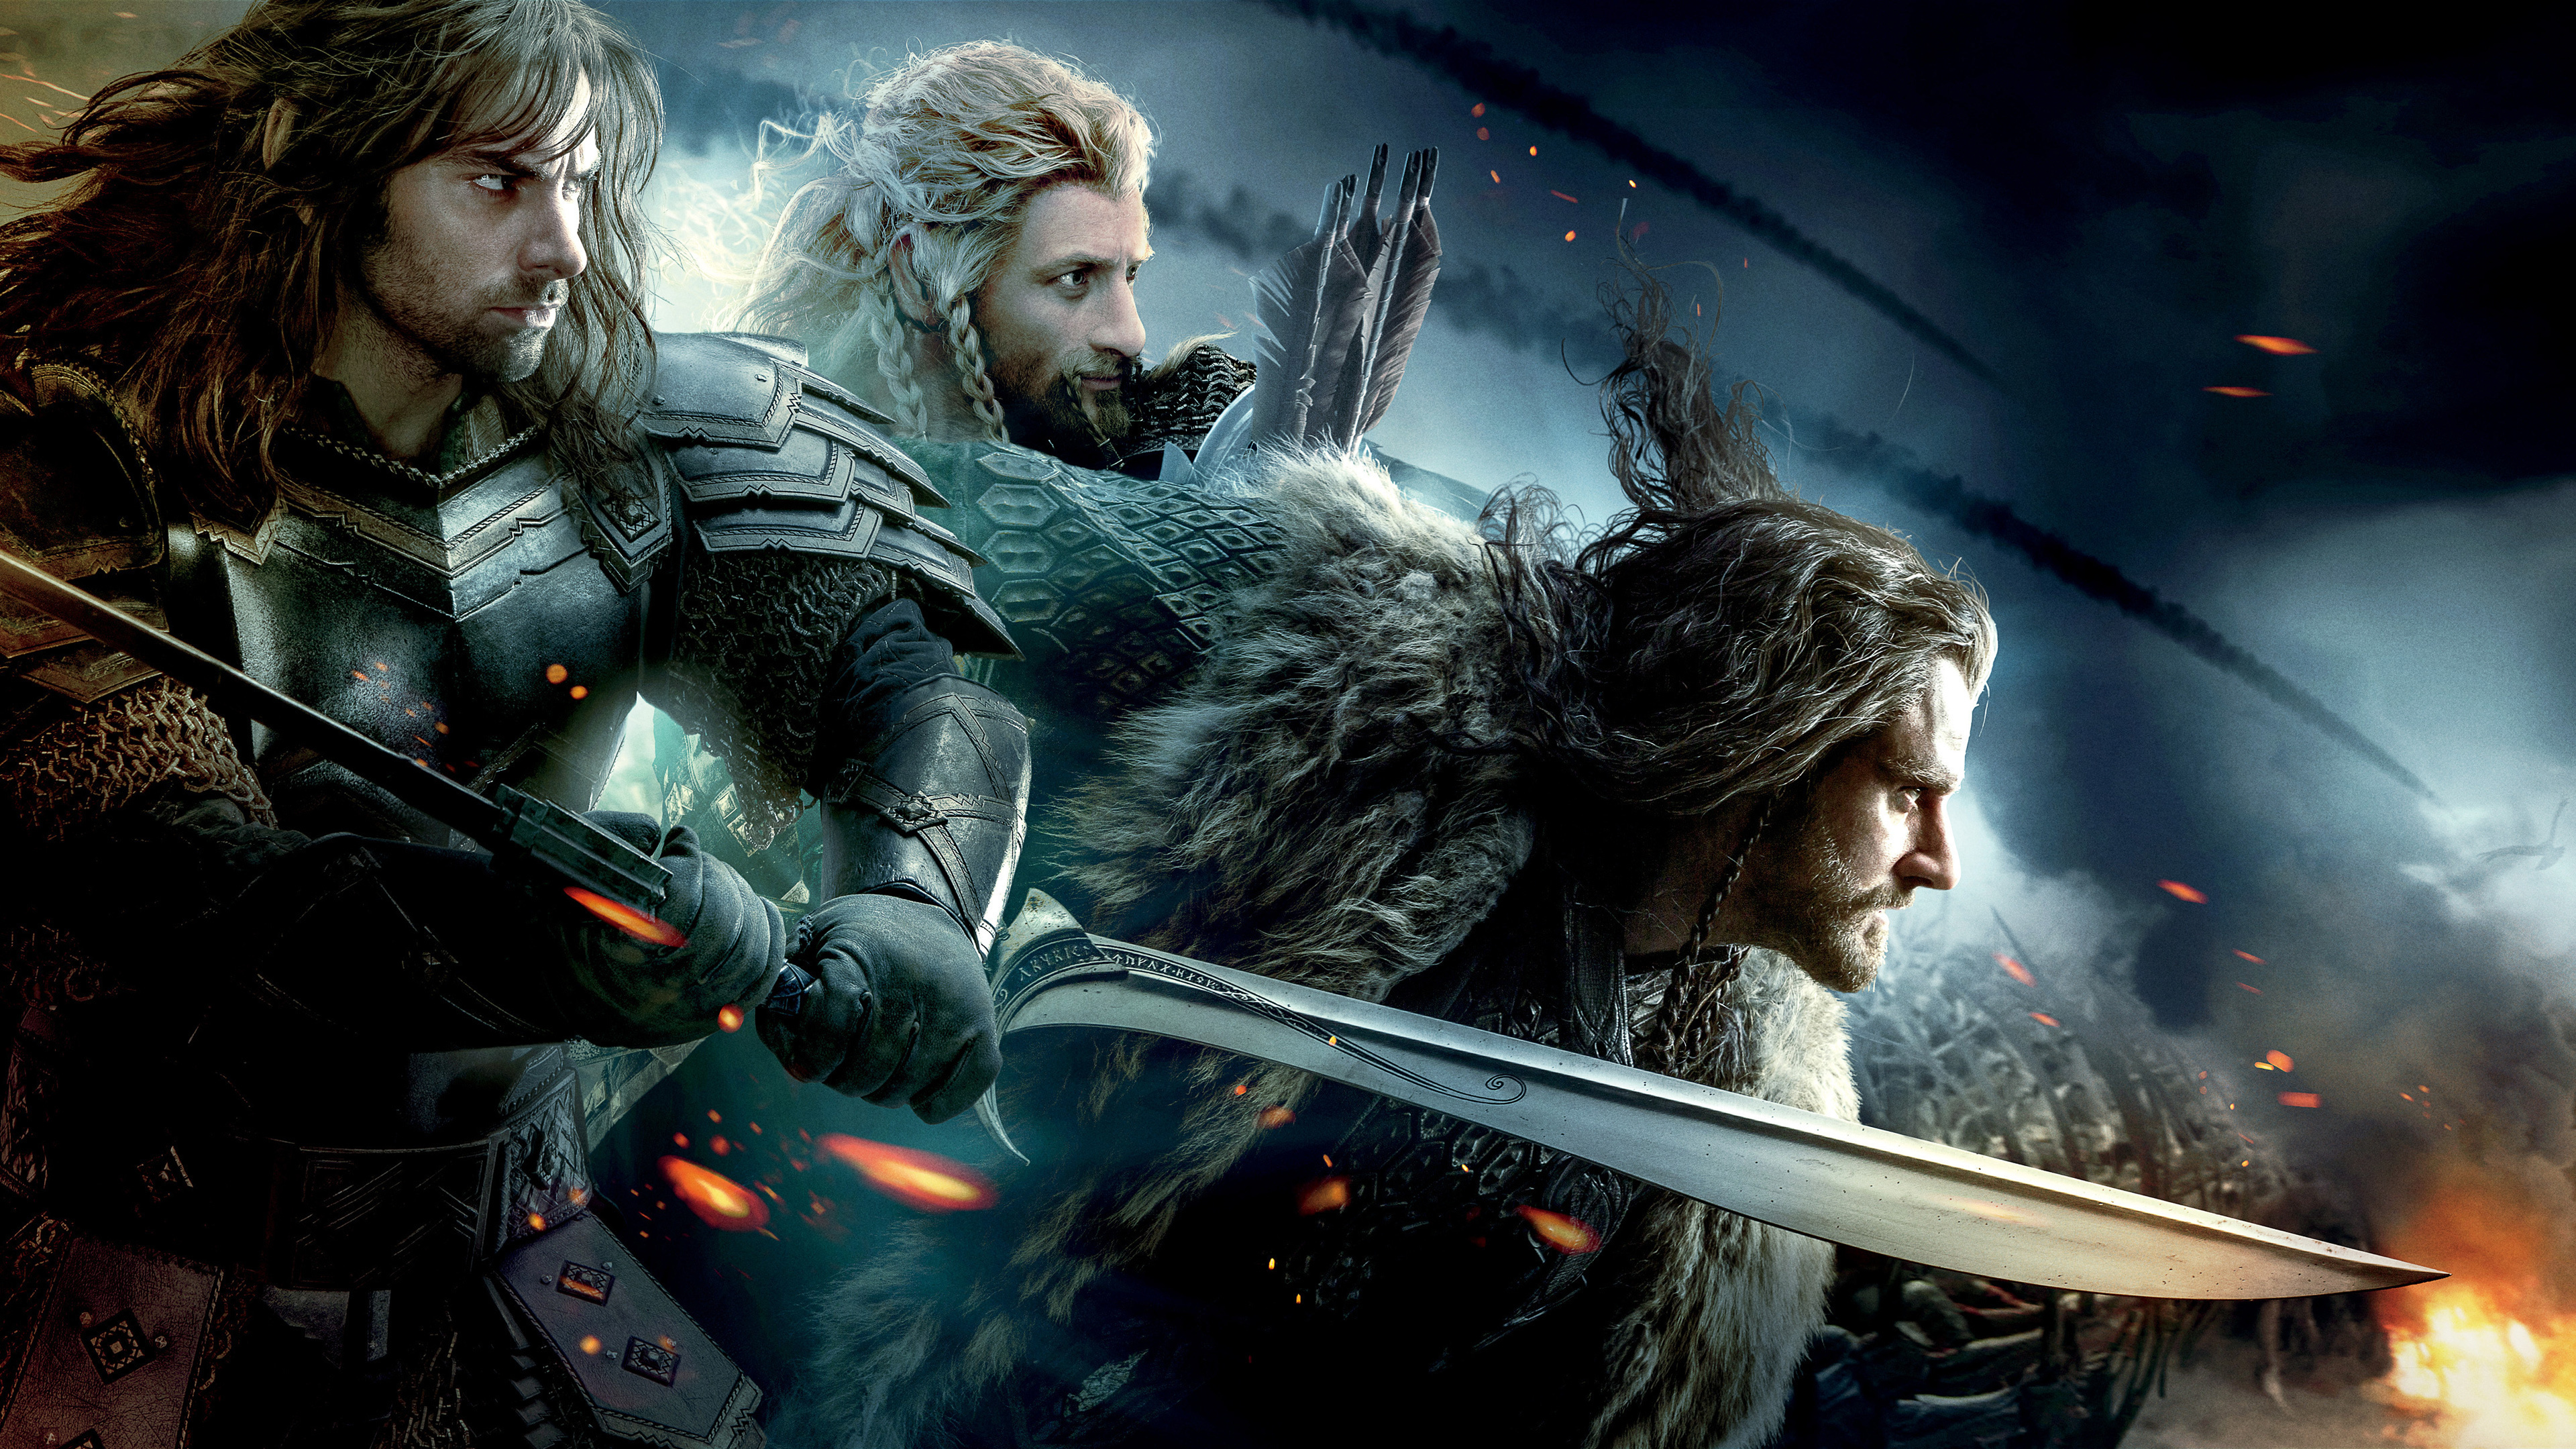 Battle of the Five Armies, Hobbit movie, 4K wallpaper, Epic battle, 3840x2160 4K Desktop